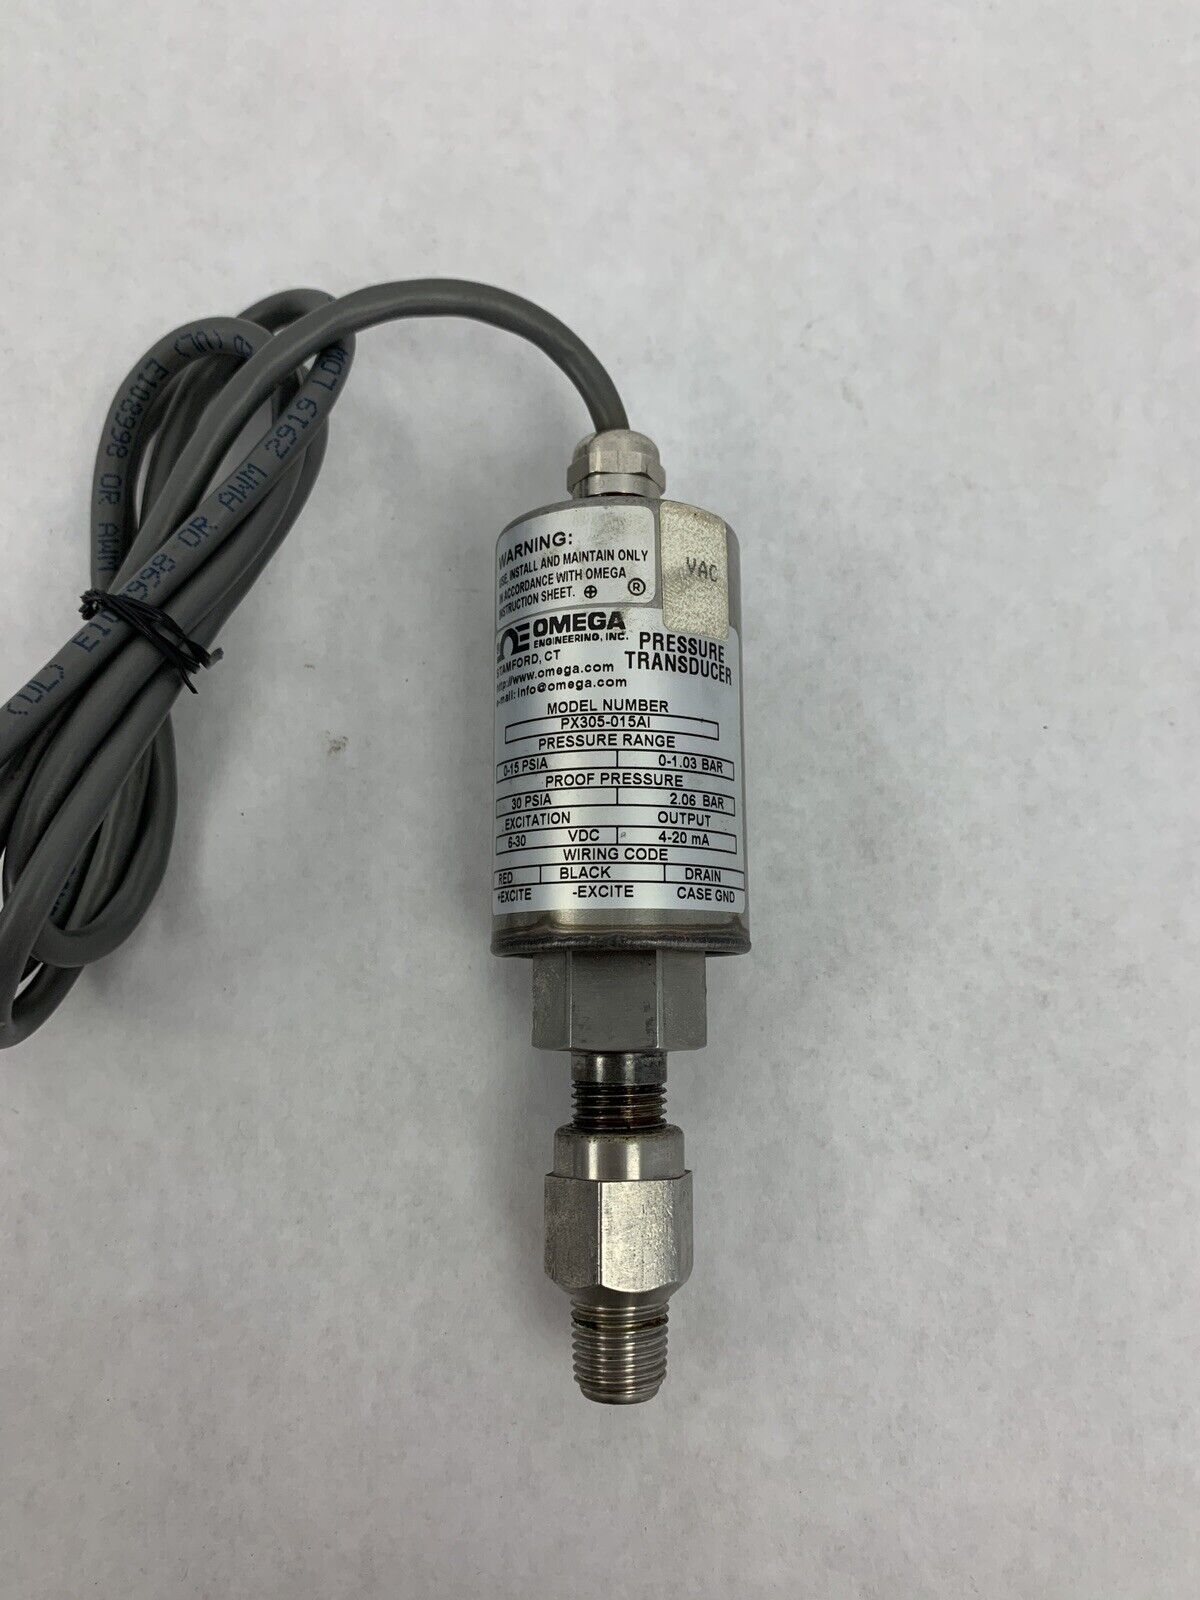 Omega Pressure Transducer PX305-015AI 0-15 PSIA 0-1.03 BAR 12-30VDC  Untested